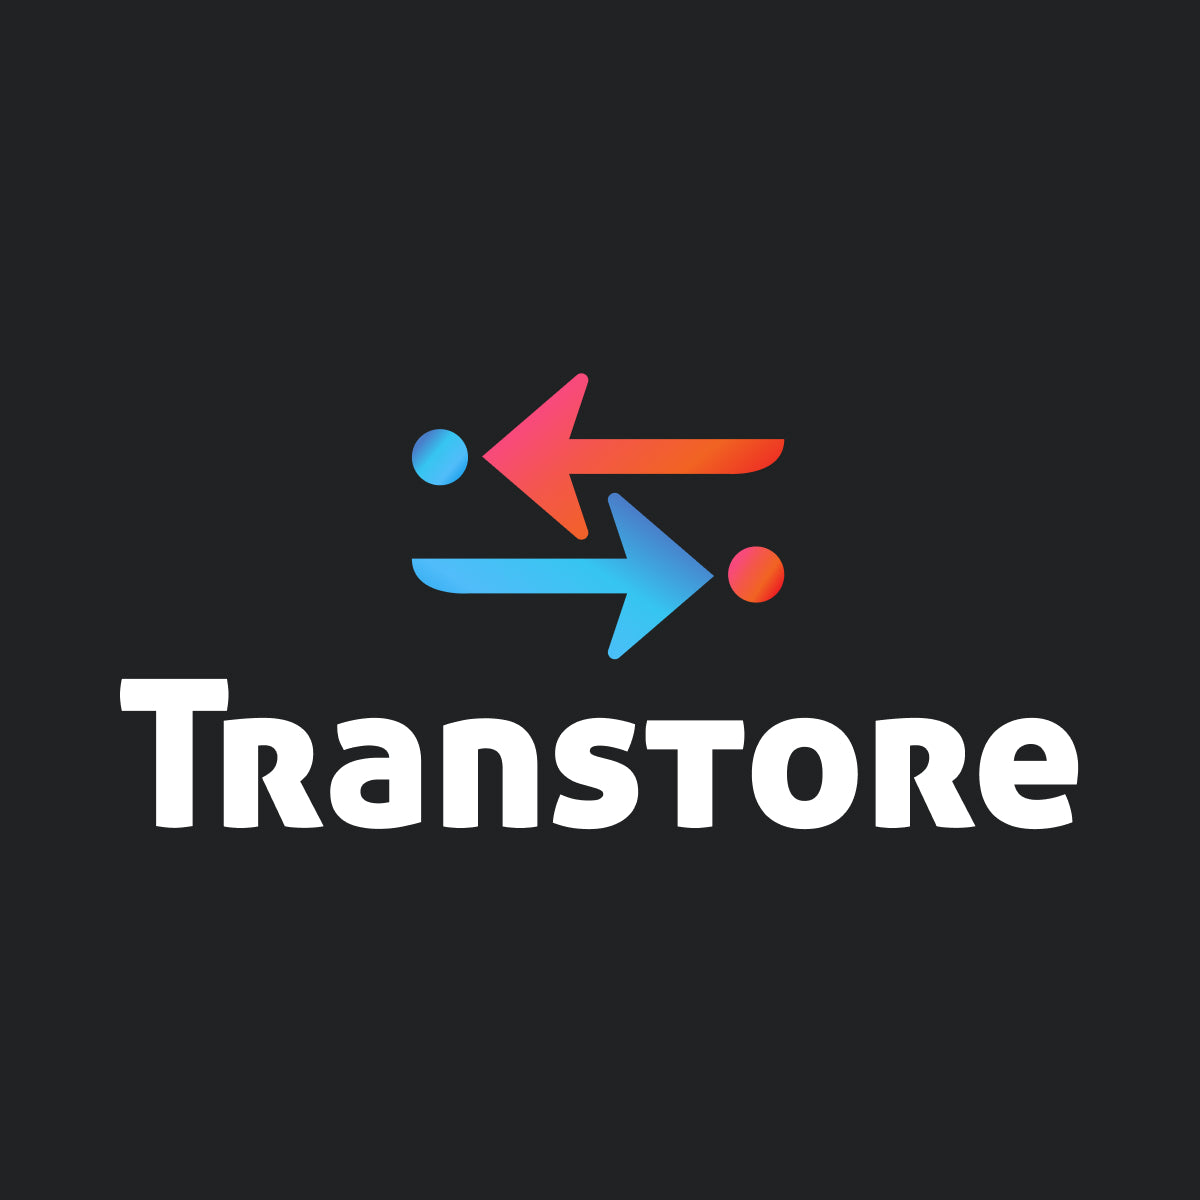 Transtore Demo Store